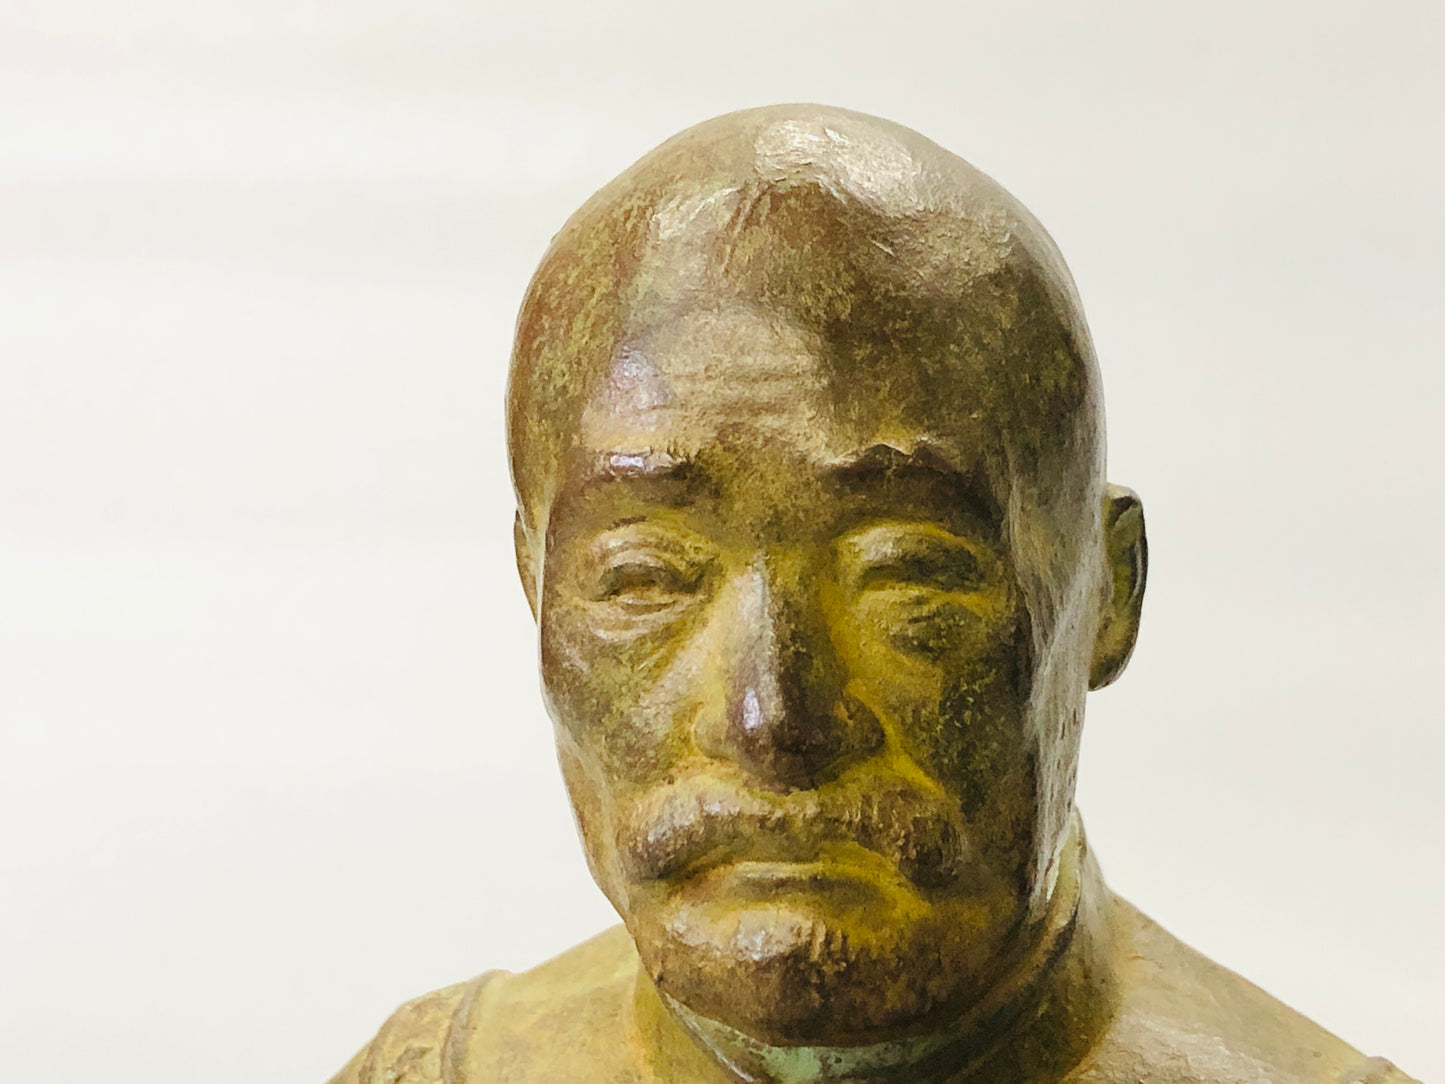 Y5294 Imperial Japan Army Bronze statue General Nogi figurine Japan WW2 vintage